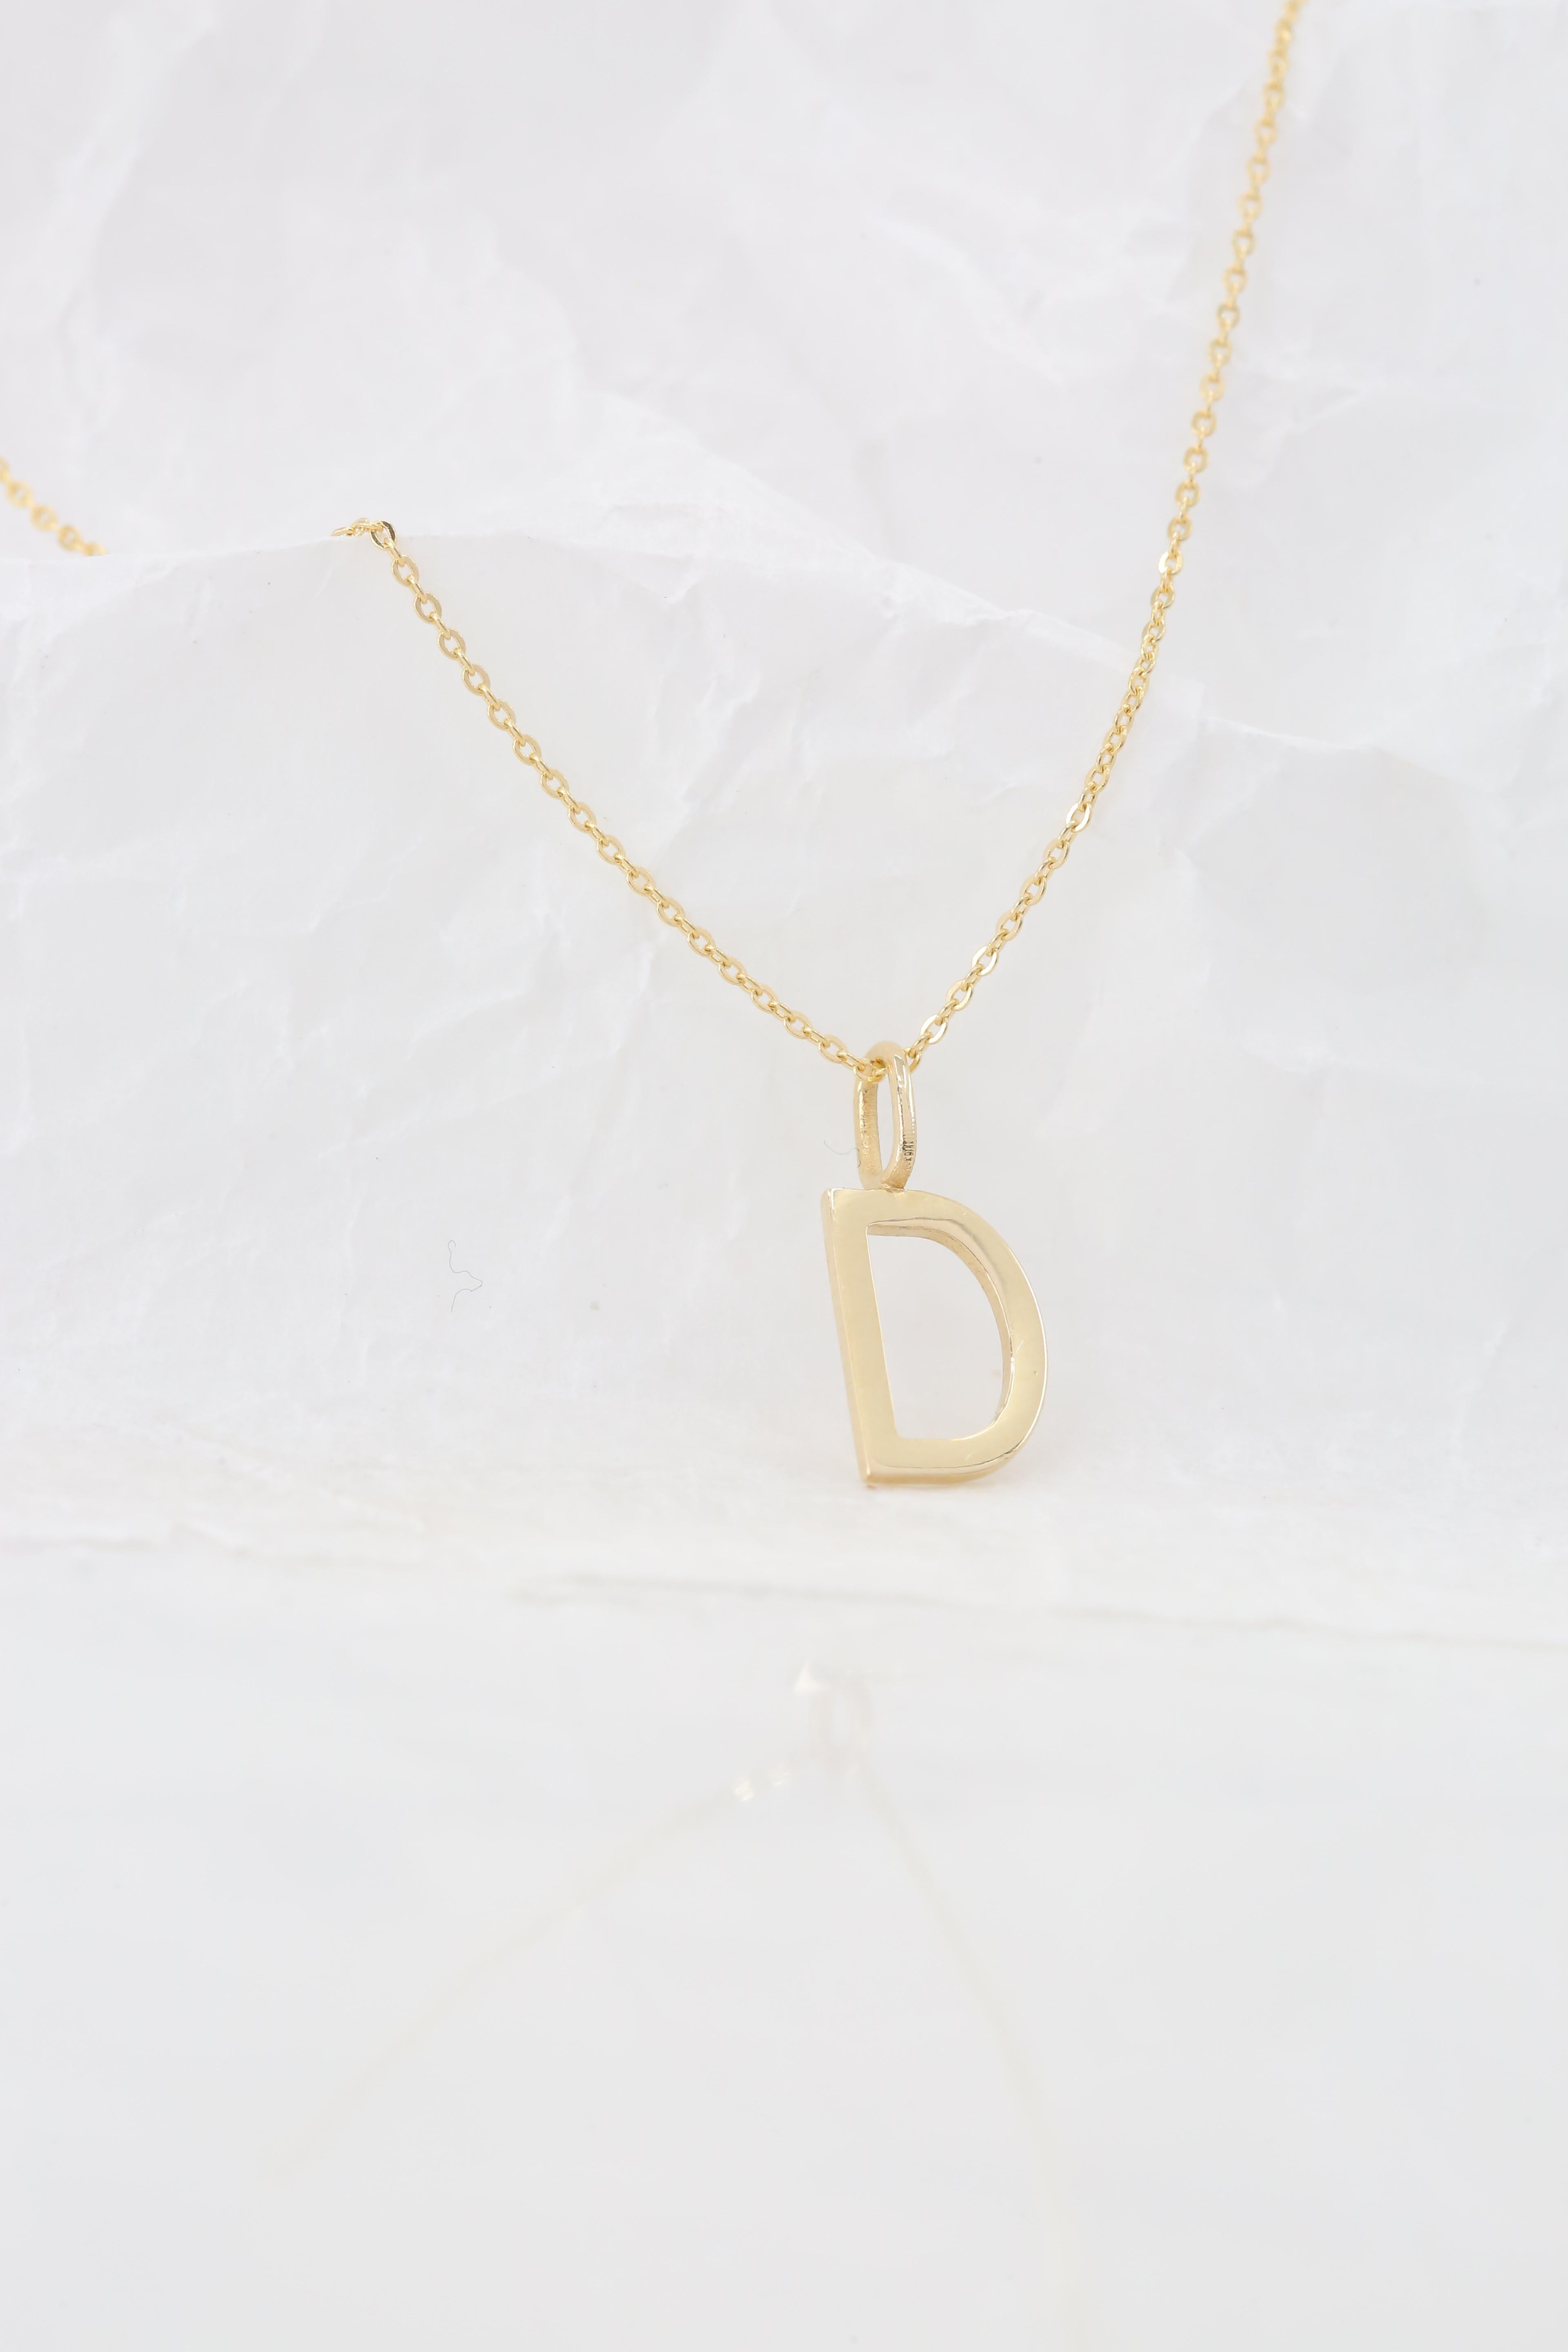 14 Karat Gold Halsketten, Buchstaben Halskette Modelle, Buchstabe D Gold Halskette-Gift Halskette für Damen oder Herren im Angebot